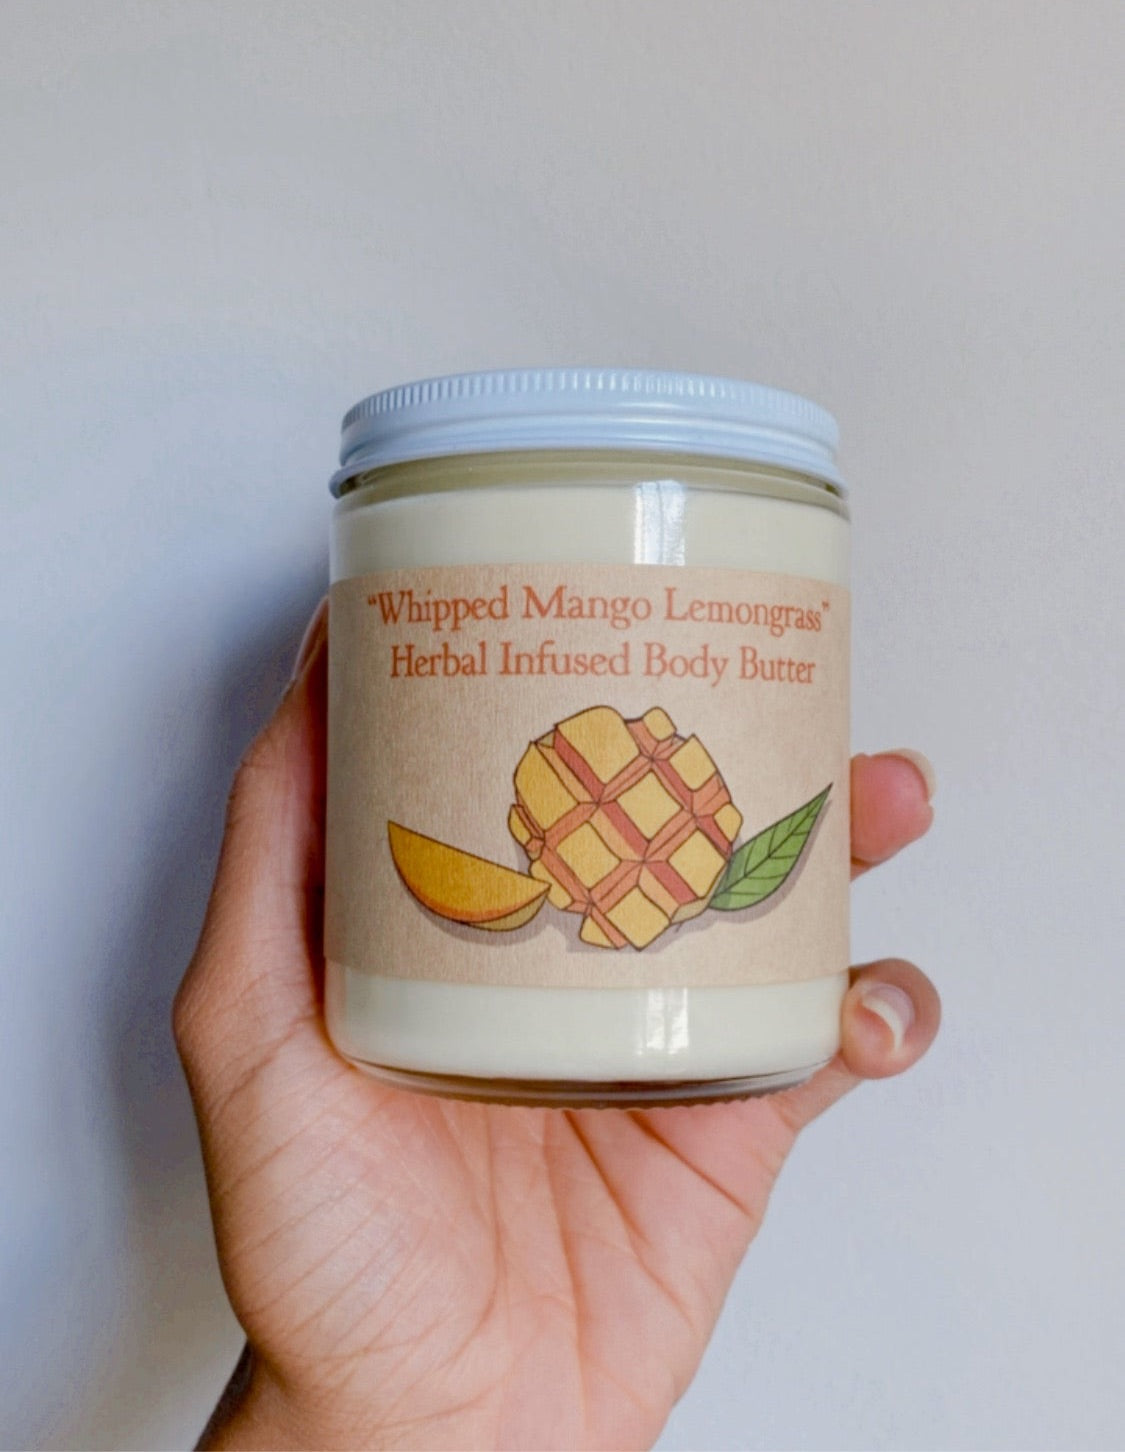 “Whipped Mango Lemongrass” Herbal Infused Body Butter